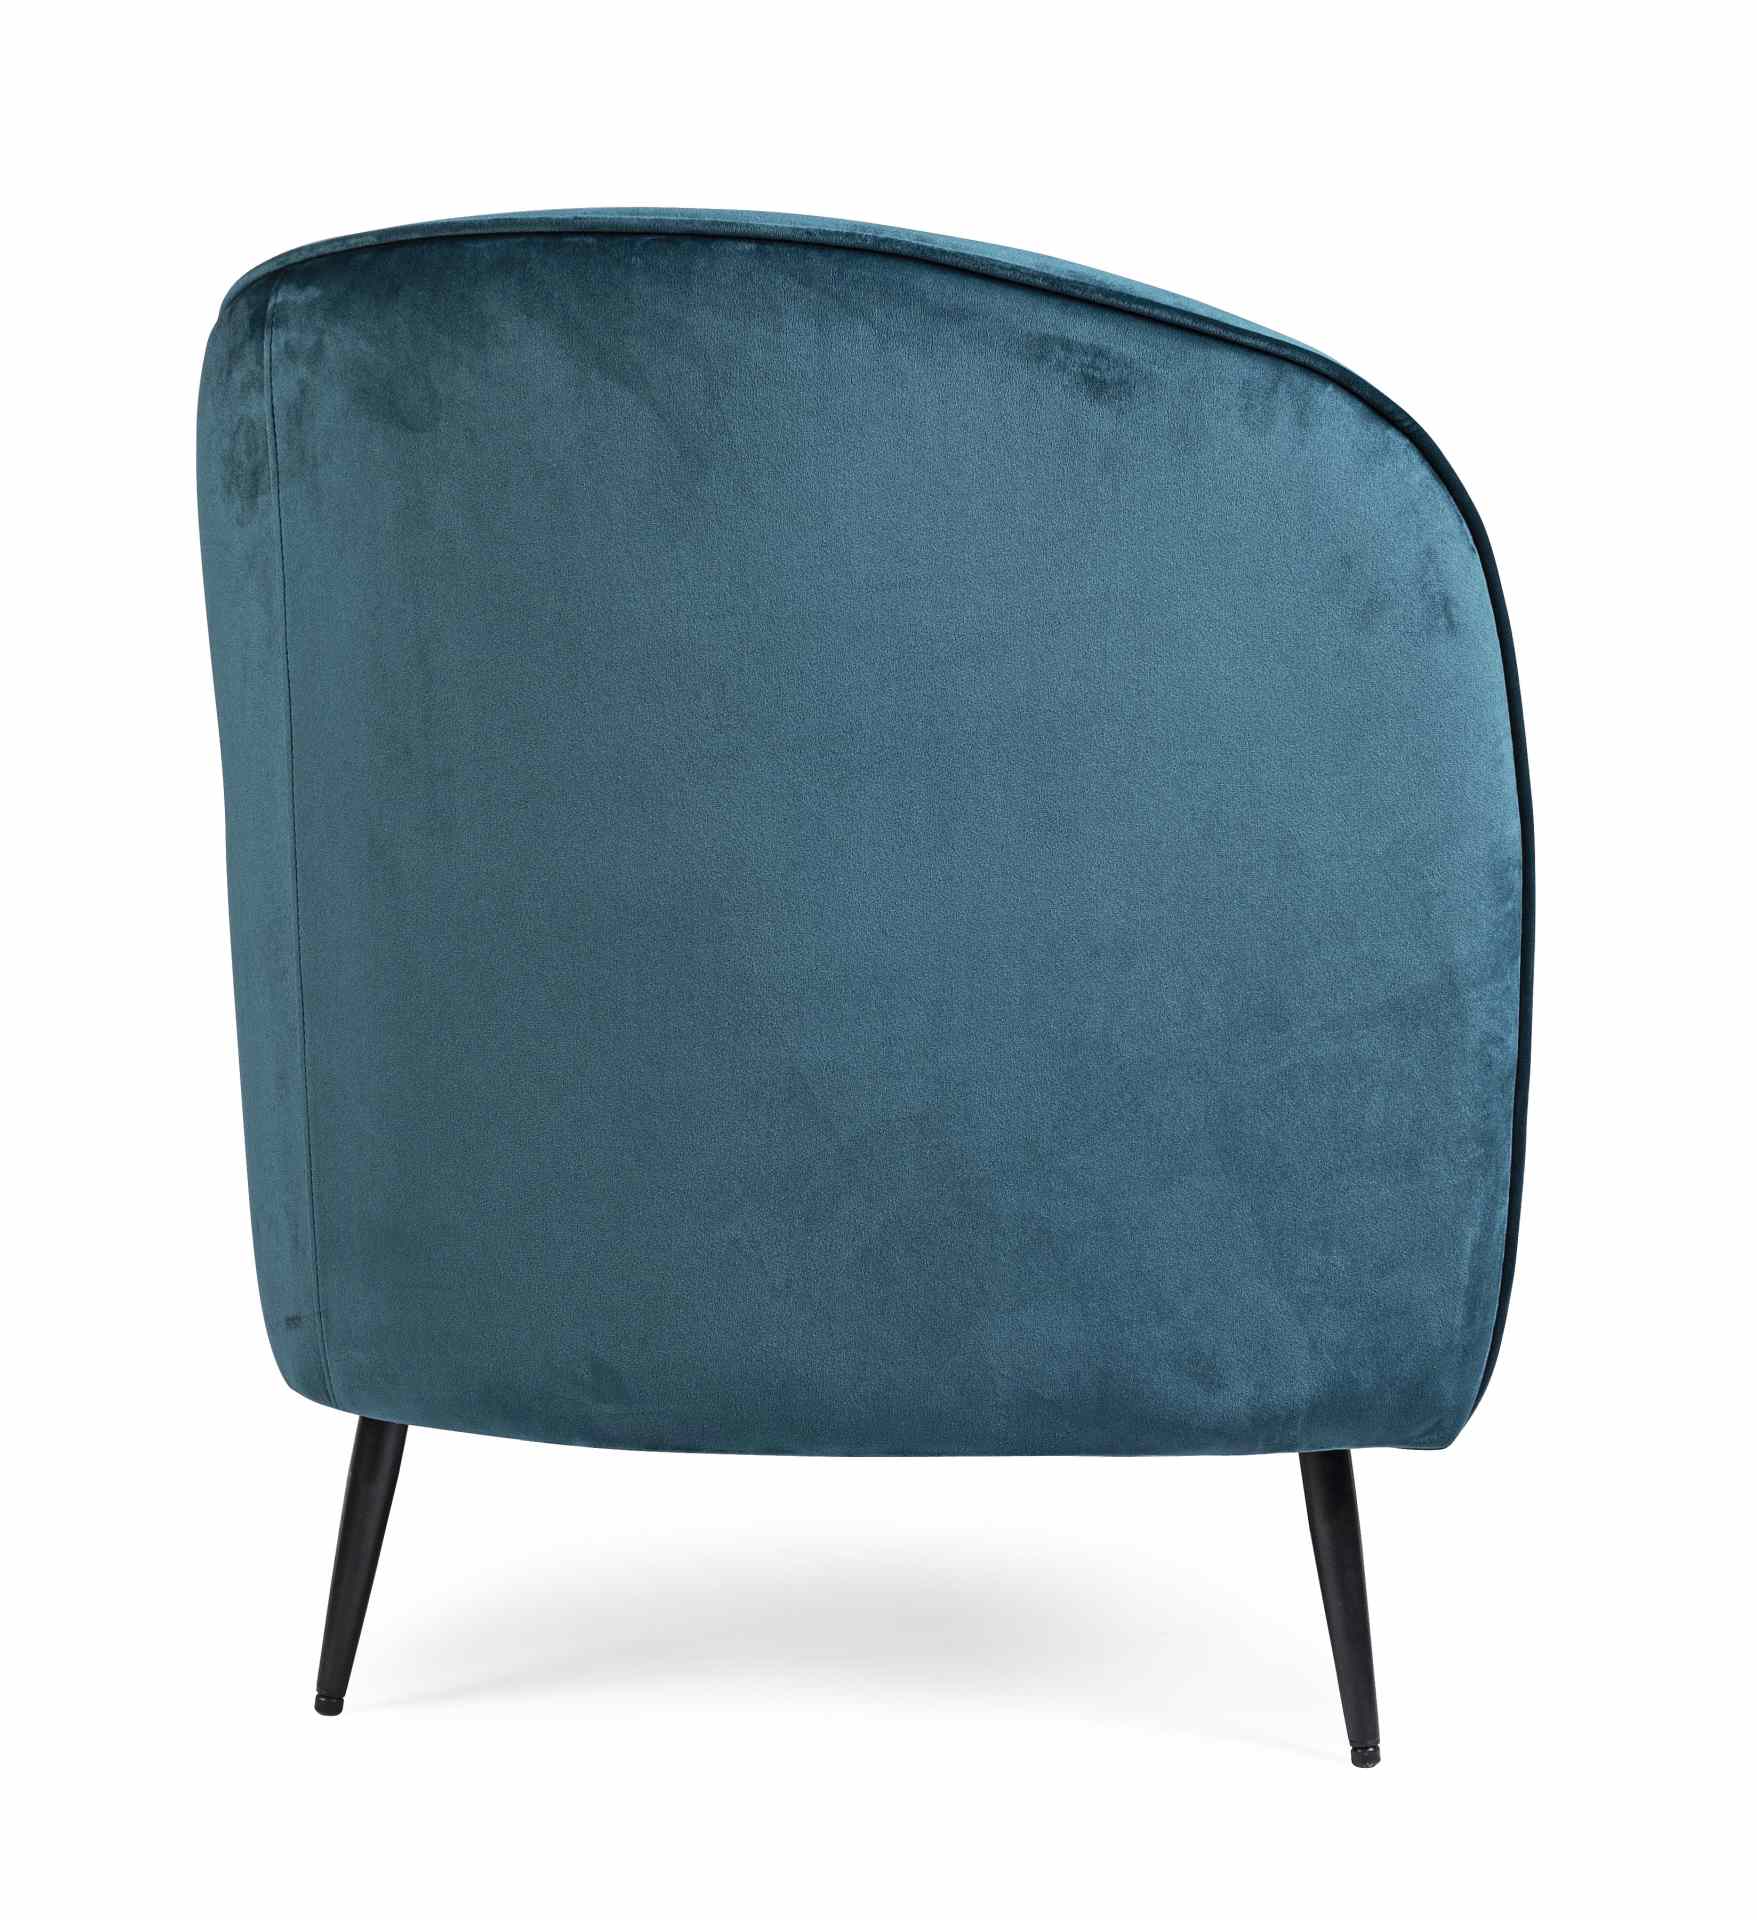 Das Sofa Candis überzeugt mit seinem modernen Design. Gefertigt wurde es aus Stoff in Samt-Optik, welcher einen blauen Farbton besitzt. Das Gestell ist aus Metall und hat eine schwarze Farbe. Das Sofa ist in der Ausführung als 2-Sitzer. Die Breite beträgt